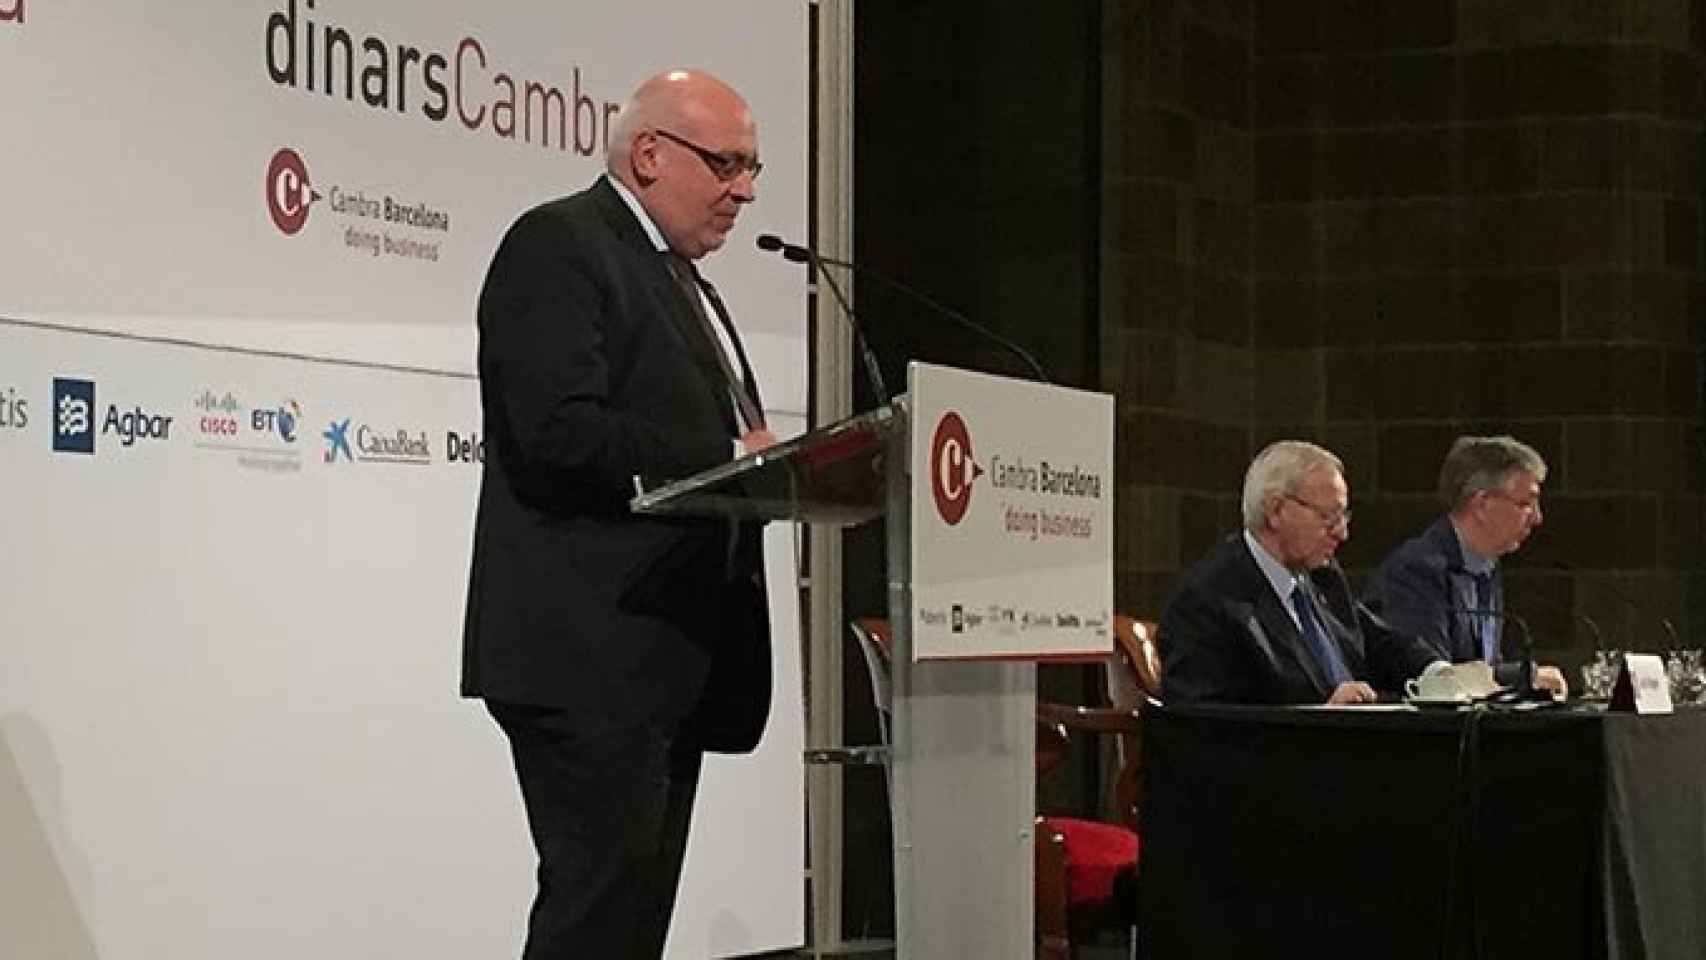 El consejero de Empresa de la Generalitat, Jordi Baiget, durante su conferencia organizada por la Cámara de Comercio de Barcelona / CG